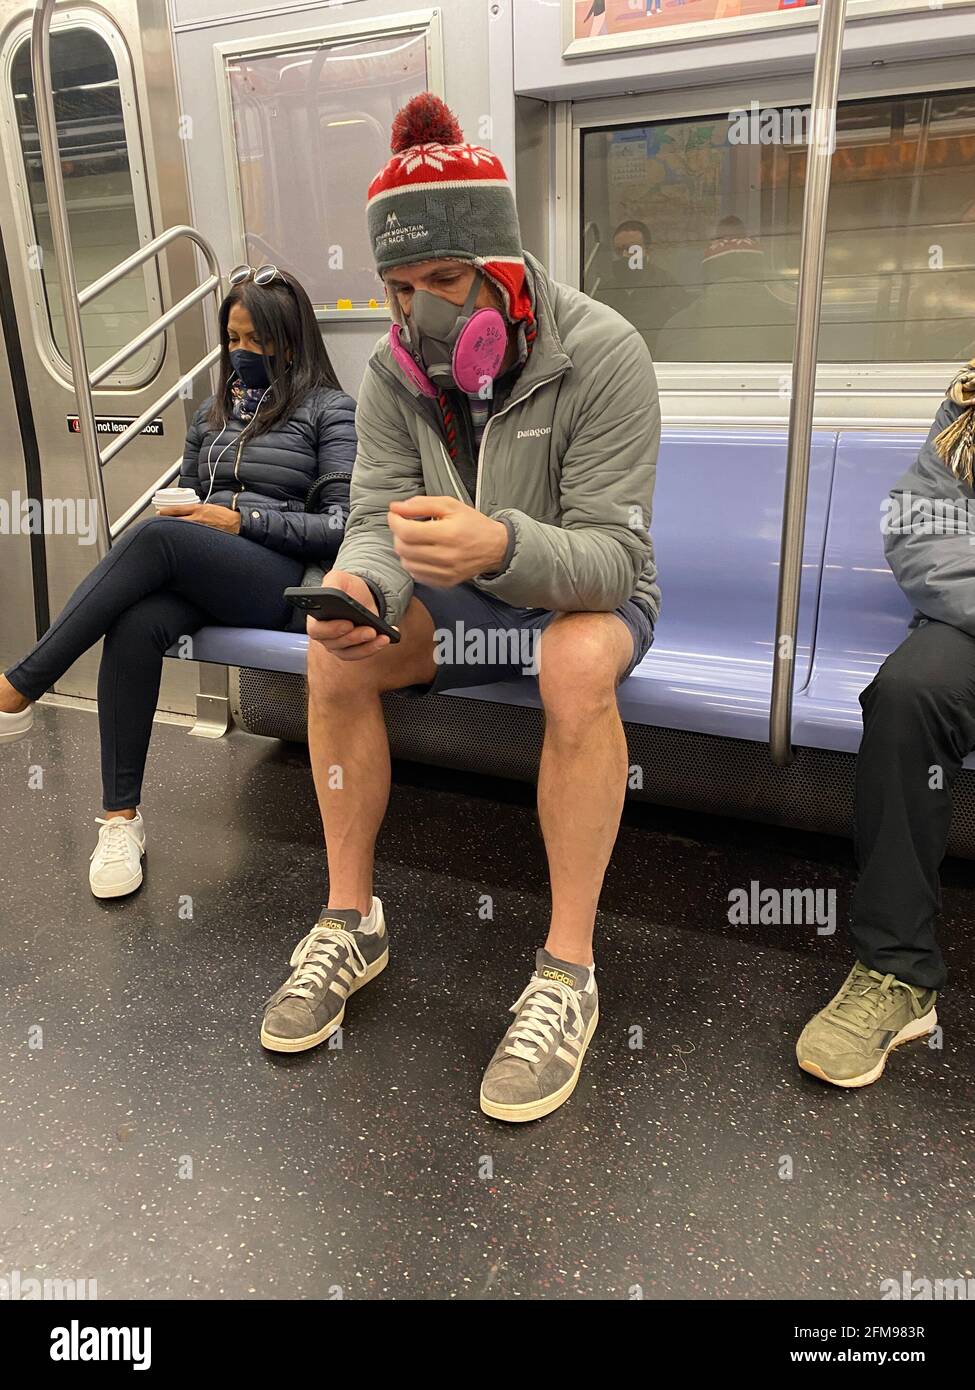 Während der Pandemie von Covid-19 in New York City trägt der Mann eine sehr ernst aussehende Gesichtsmaske in einem U-Bahn-Zug. Stockfoto